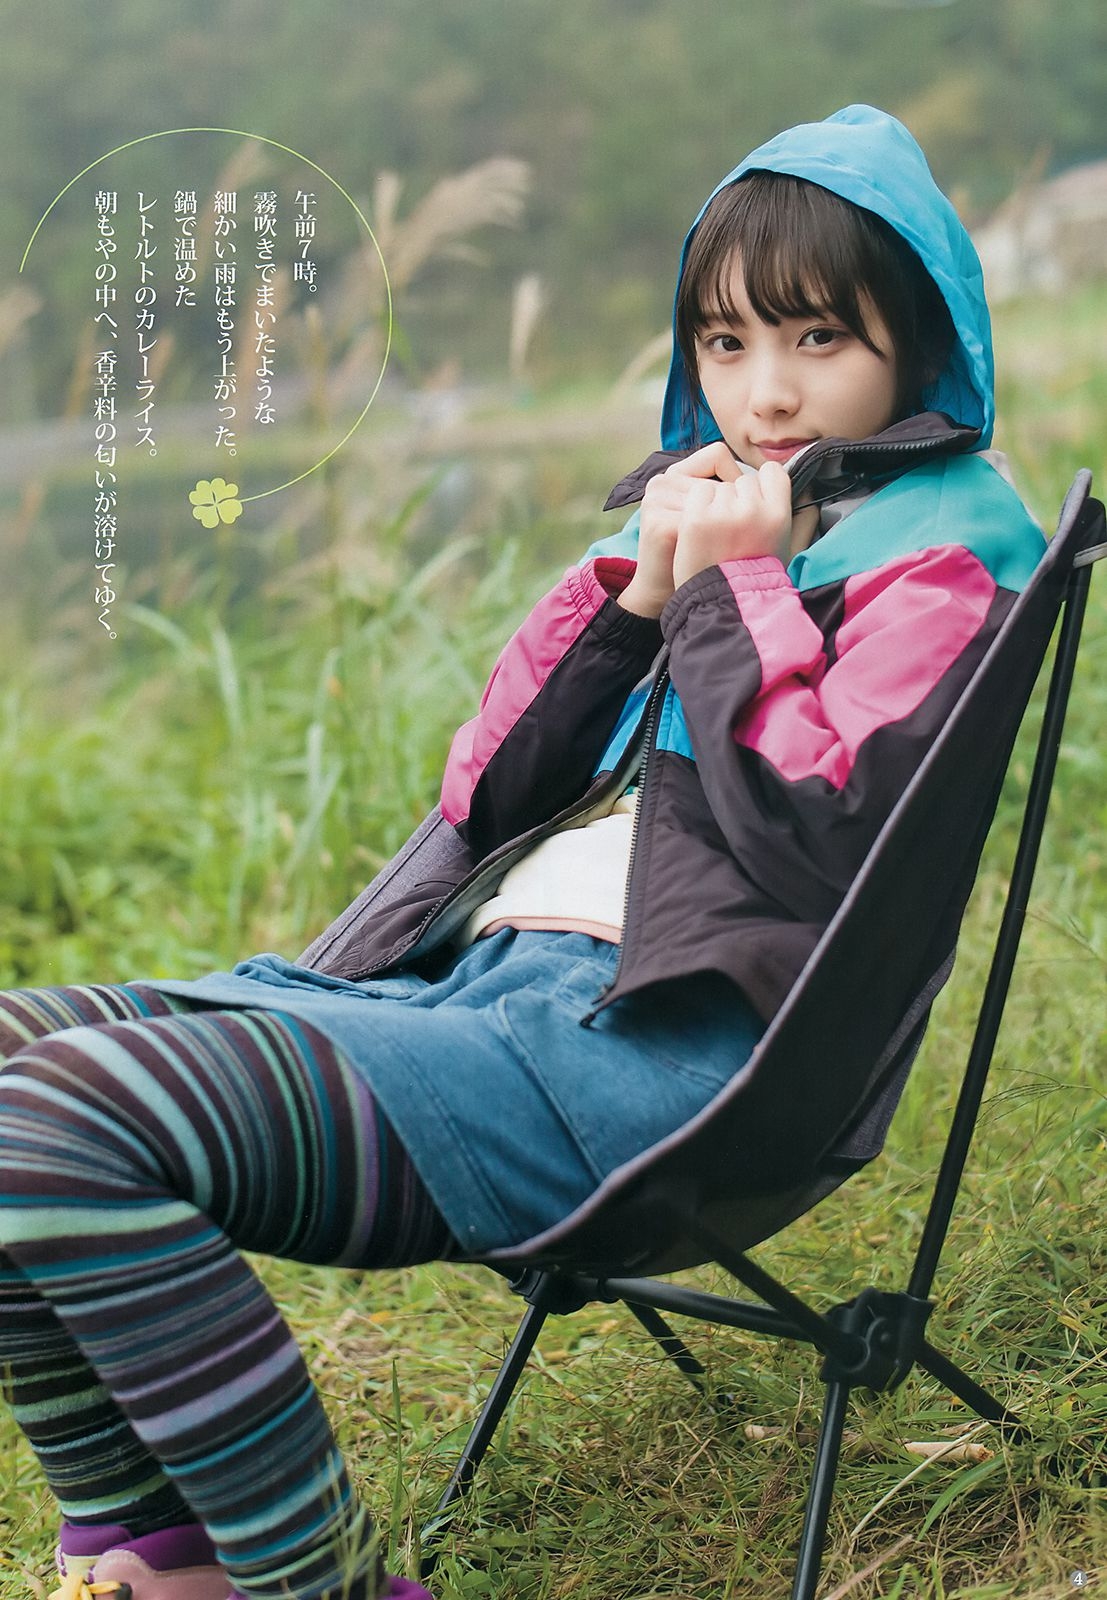 与田祐希 田中えれな 宮﨑優 [Weekly Young Jump] 2018年No.49 写真杂志 